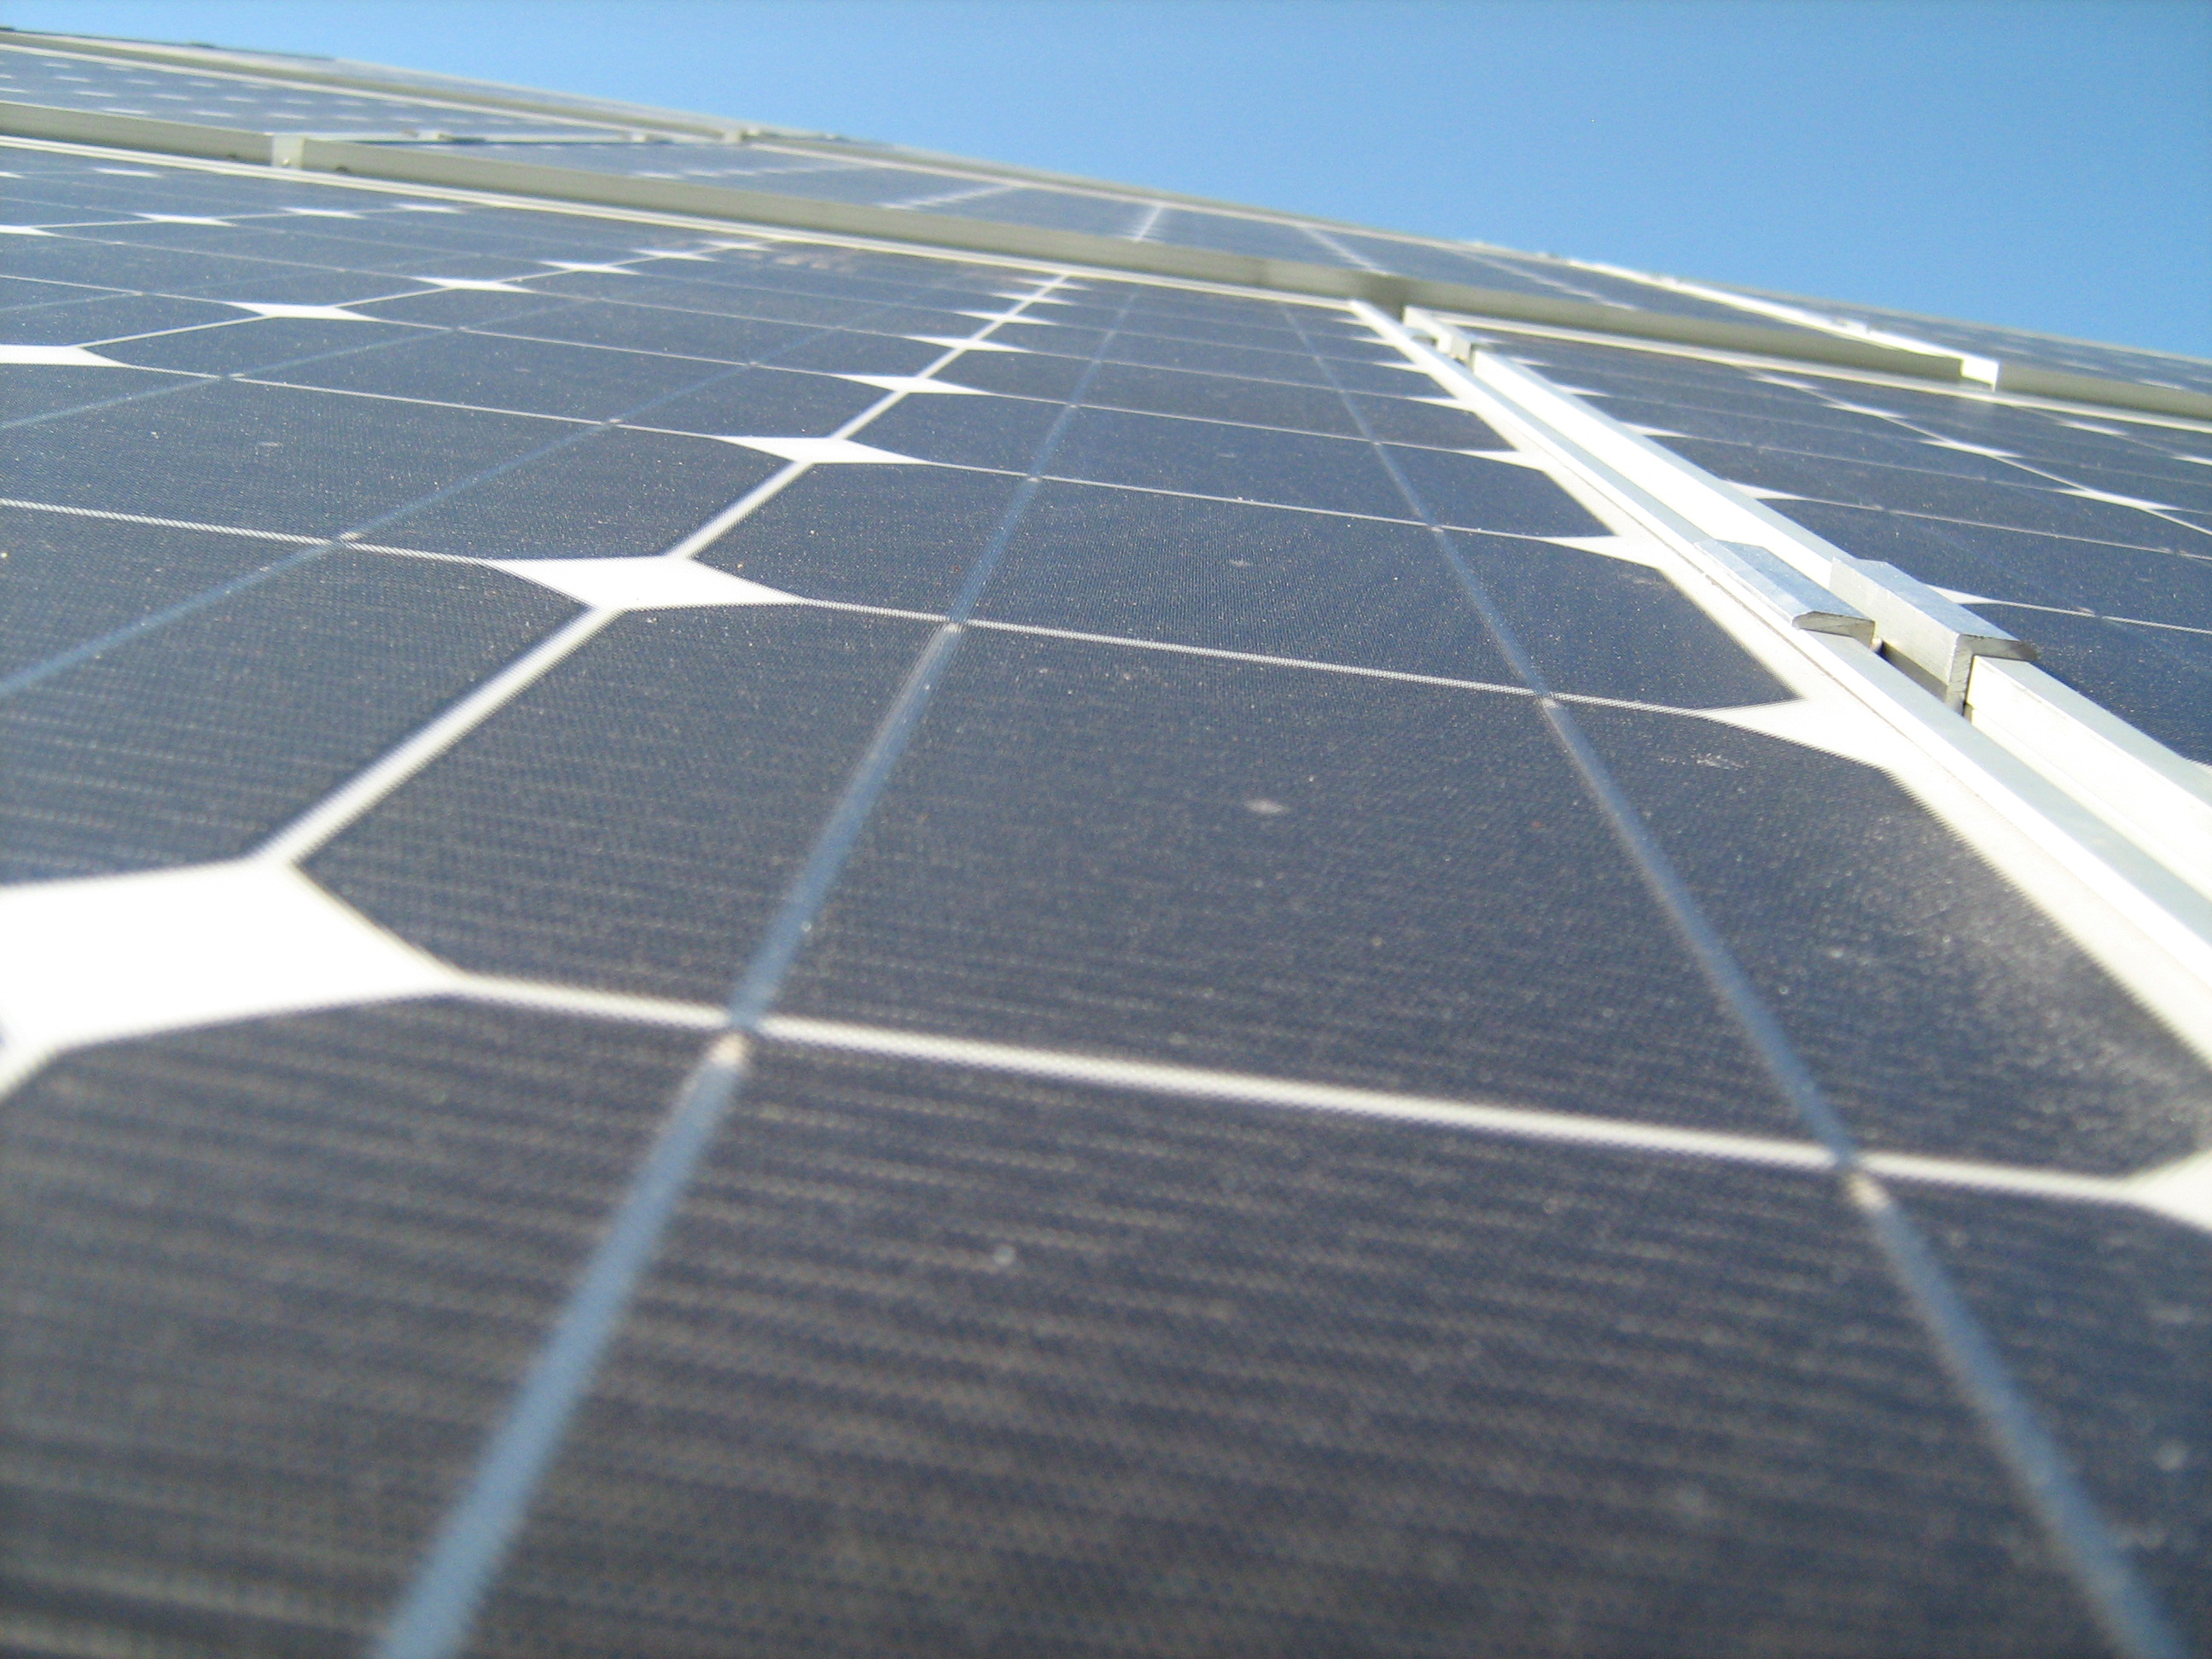 Detrazione fiscale 50% – Impianti fotovoltaici